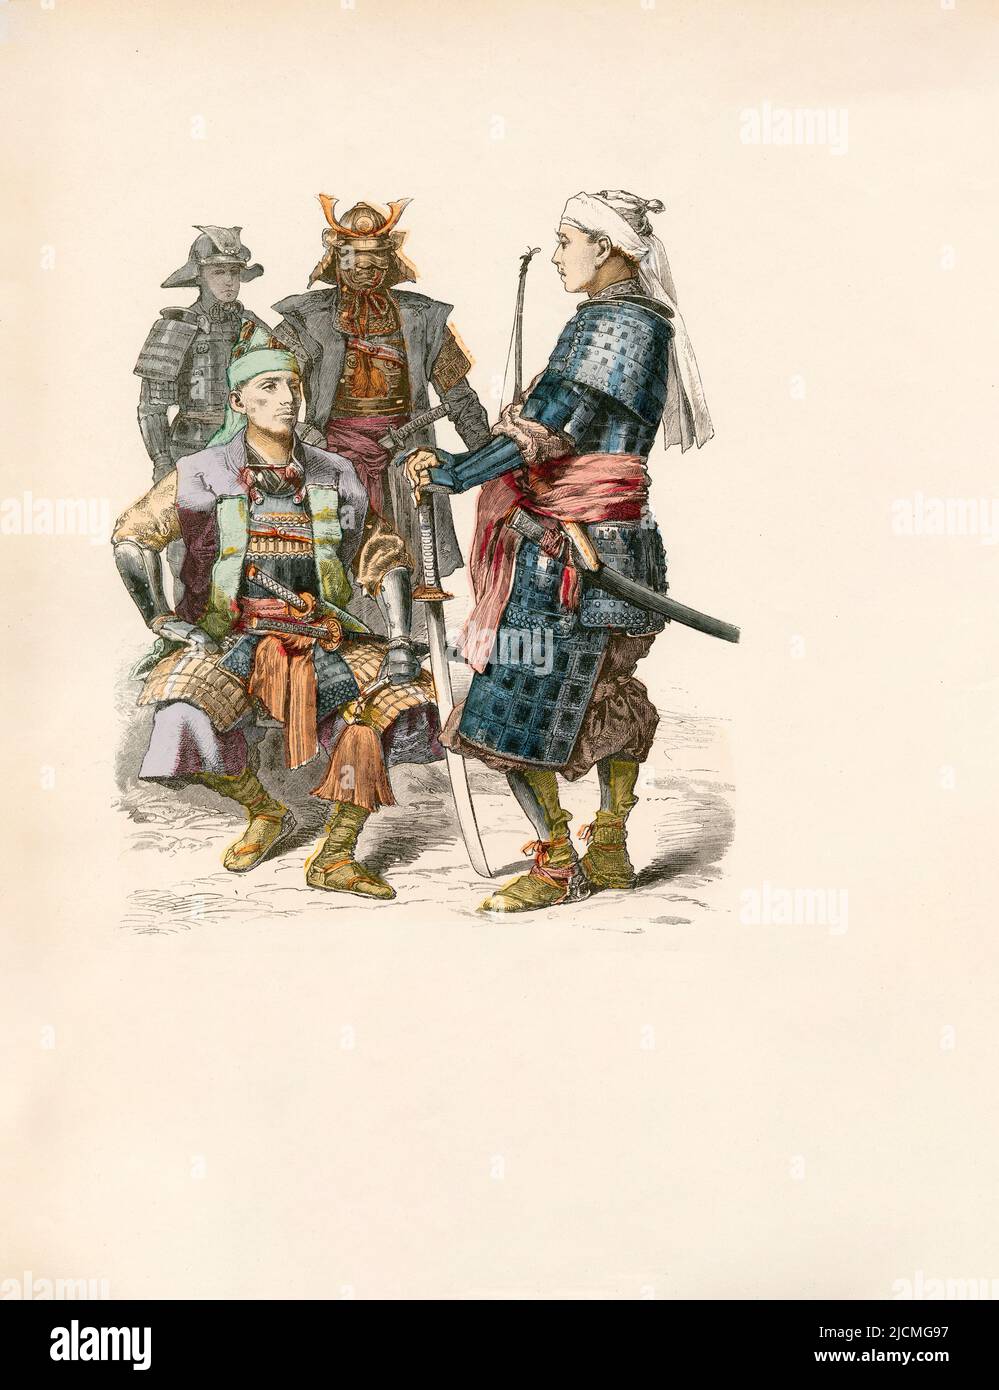 Soldats, Japon, fin du 19th siècle, Illustration, l'histoire du costume, Braun & Schneider, Munich, Allemagne, 1861-1880 Banque D'Images